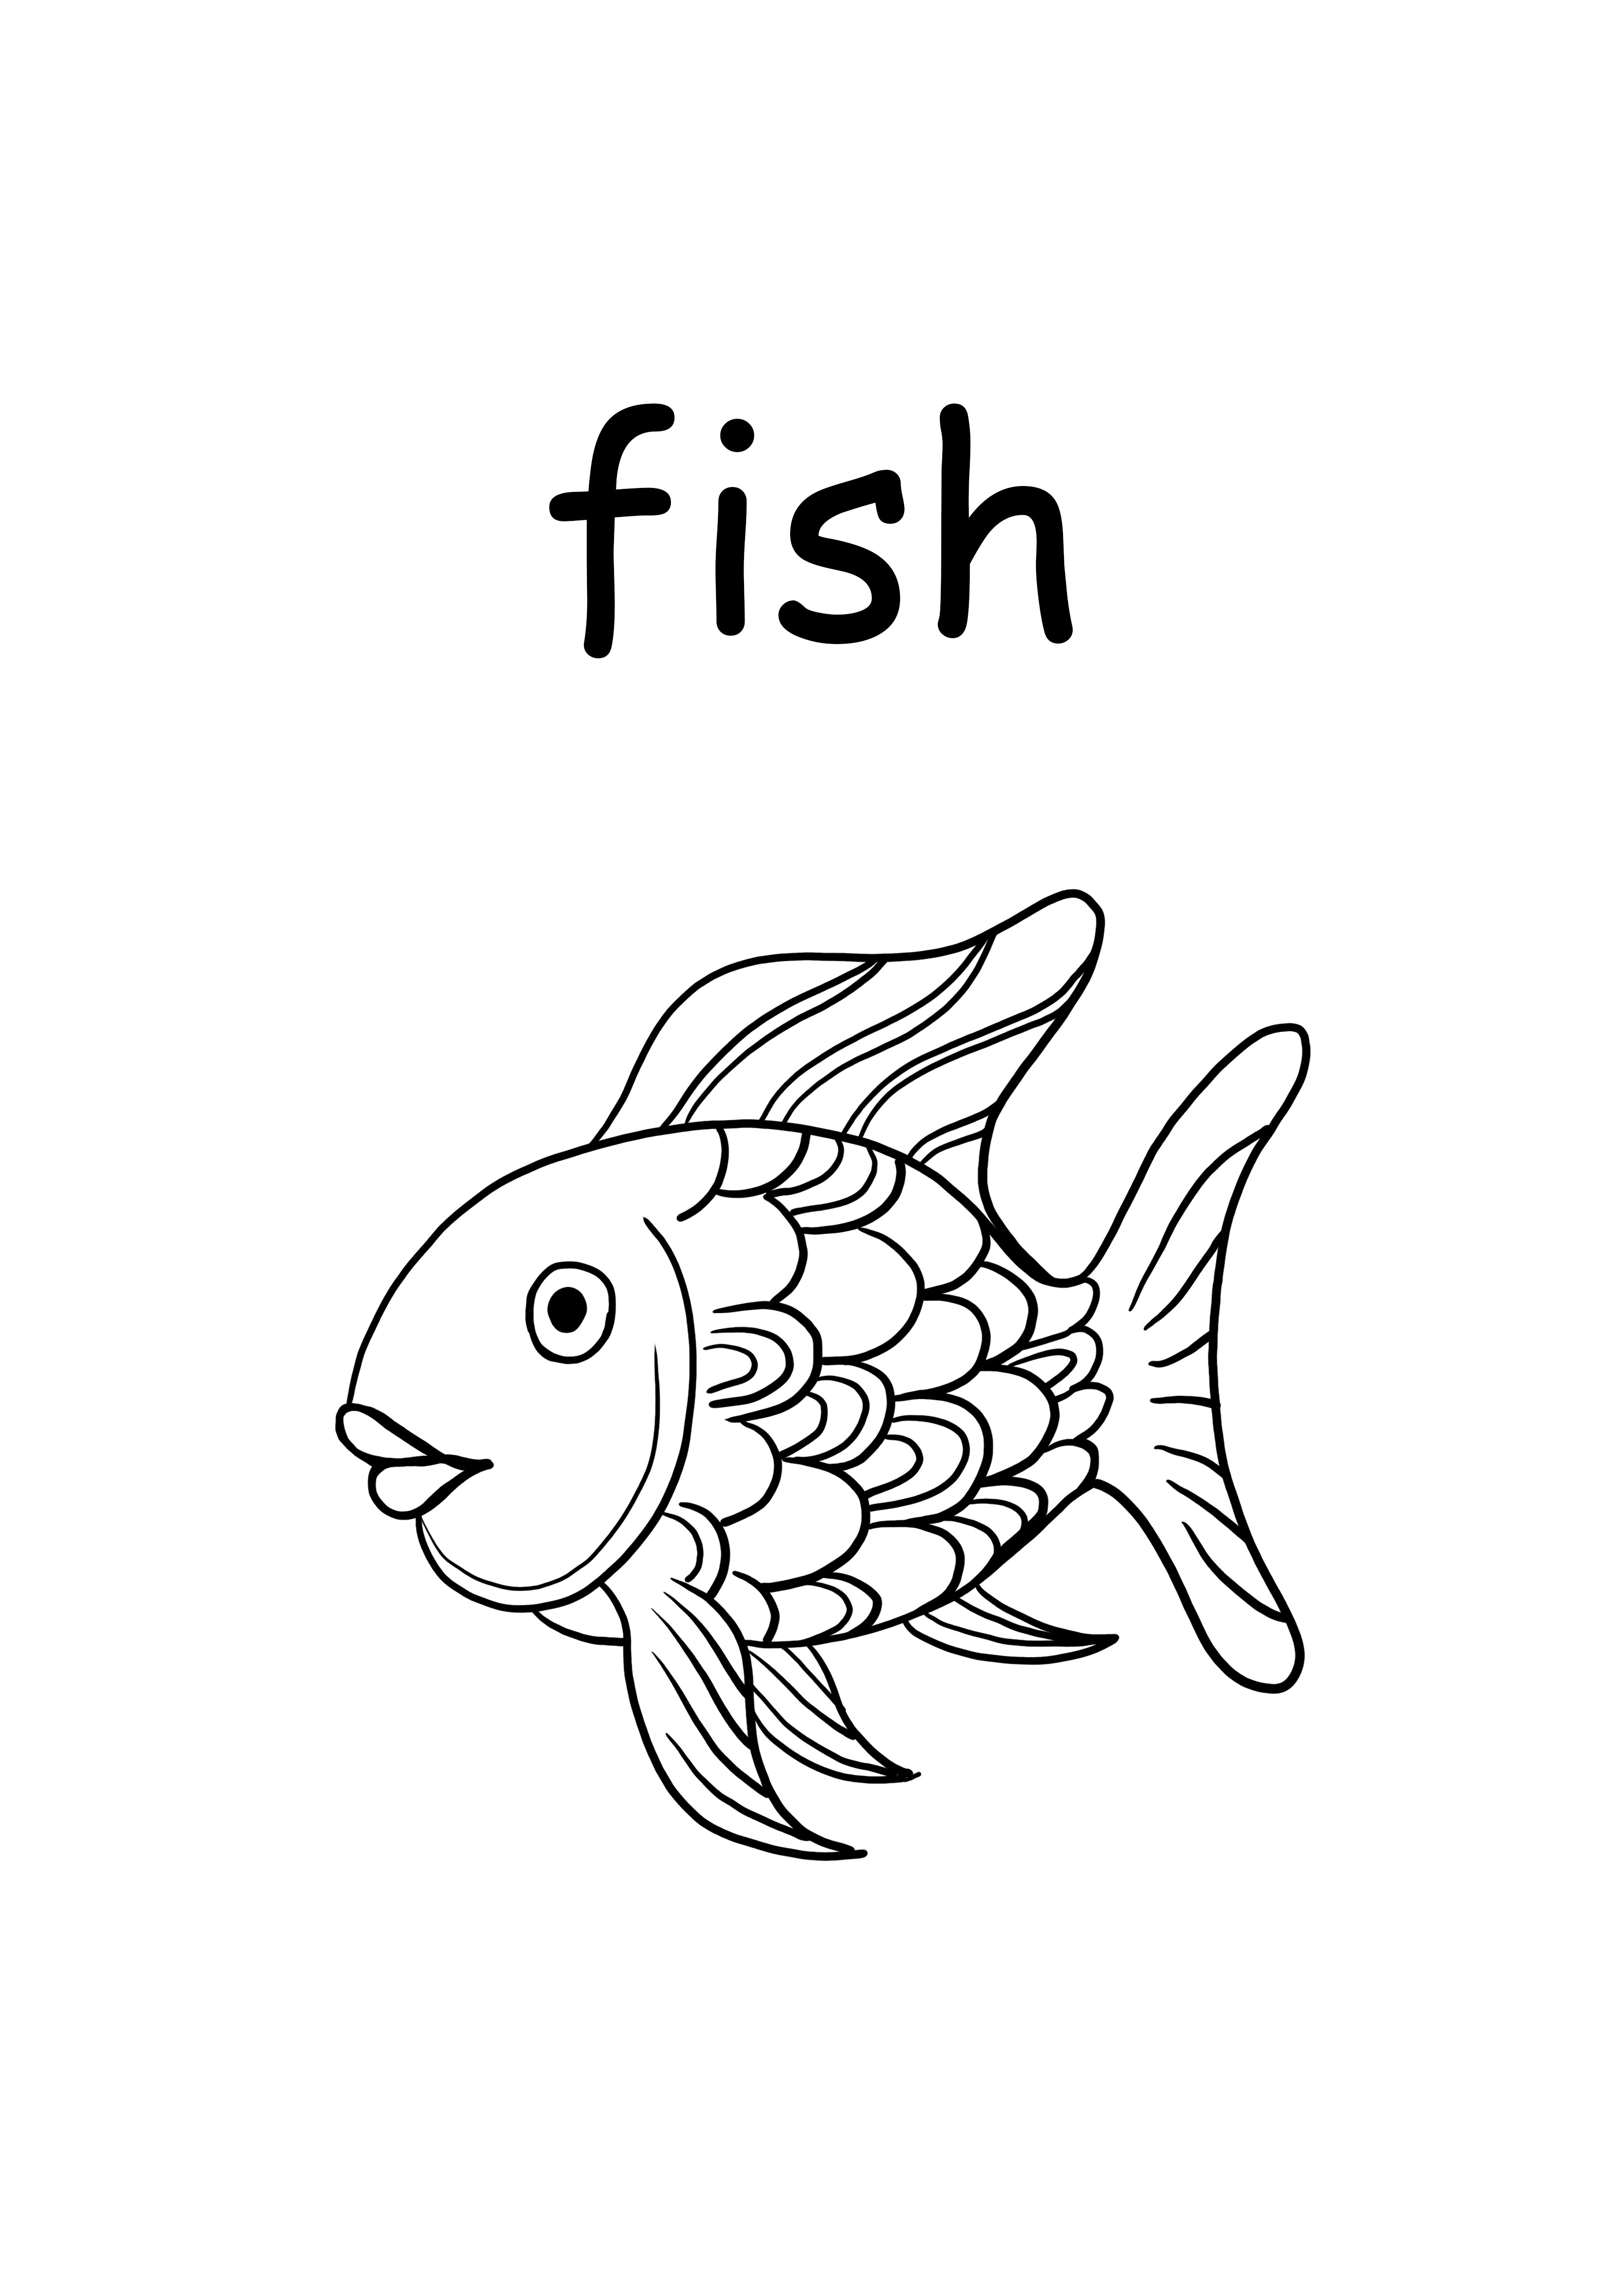 魚の小文字の単語を印刷して無料で色付けする場合はf